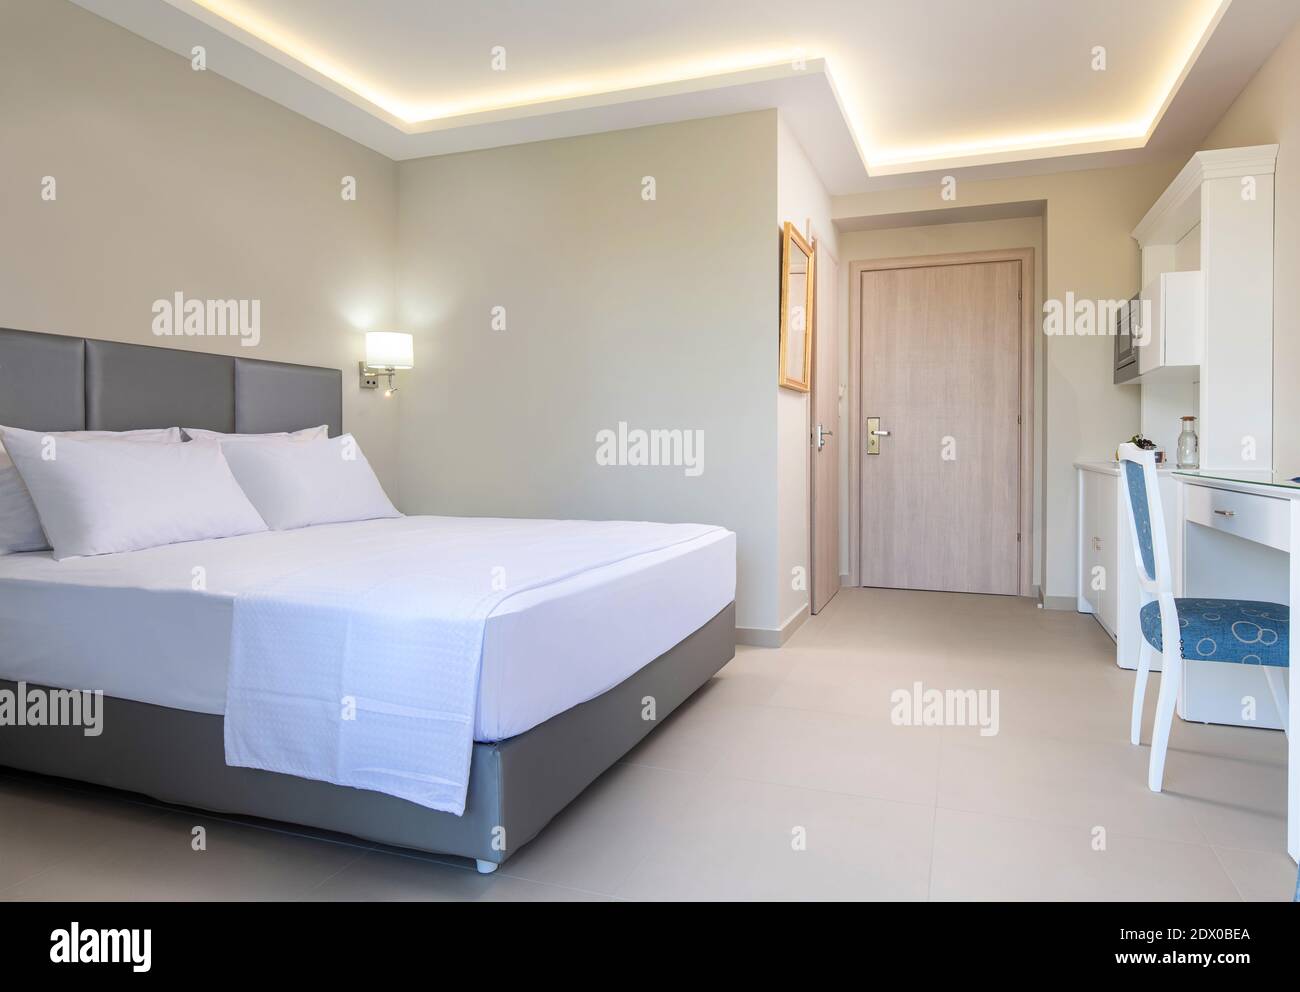 Interni bianchi in stile classico della camera da letto dell'hotel, bagno, cucina in uno spazio singolo di un piccolo appartamento monolocale moderno Foto Stock